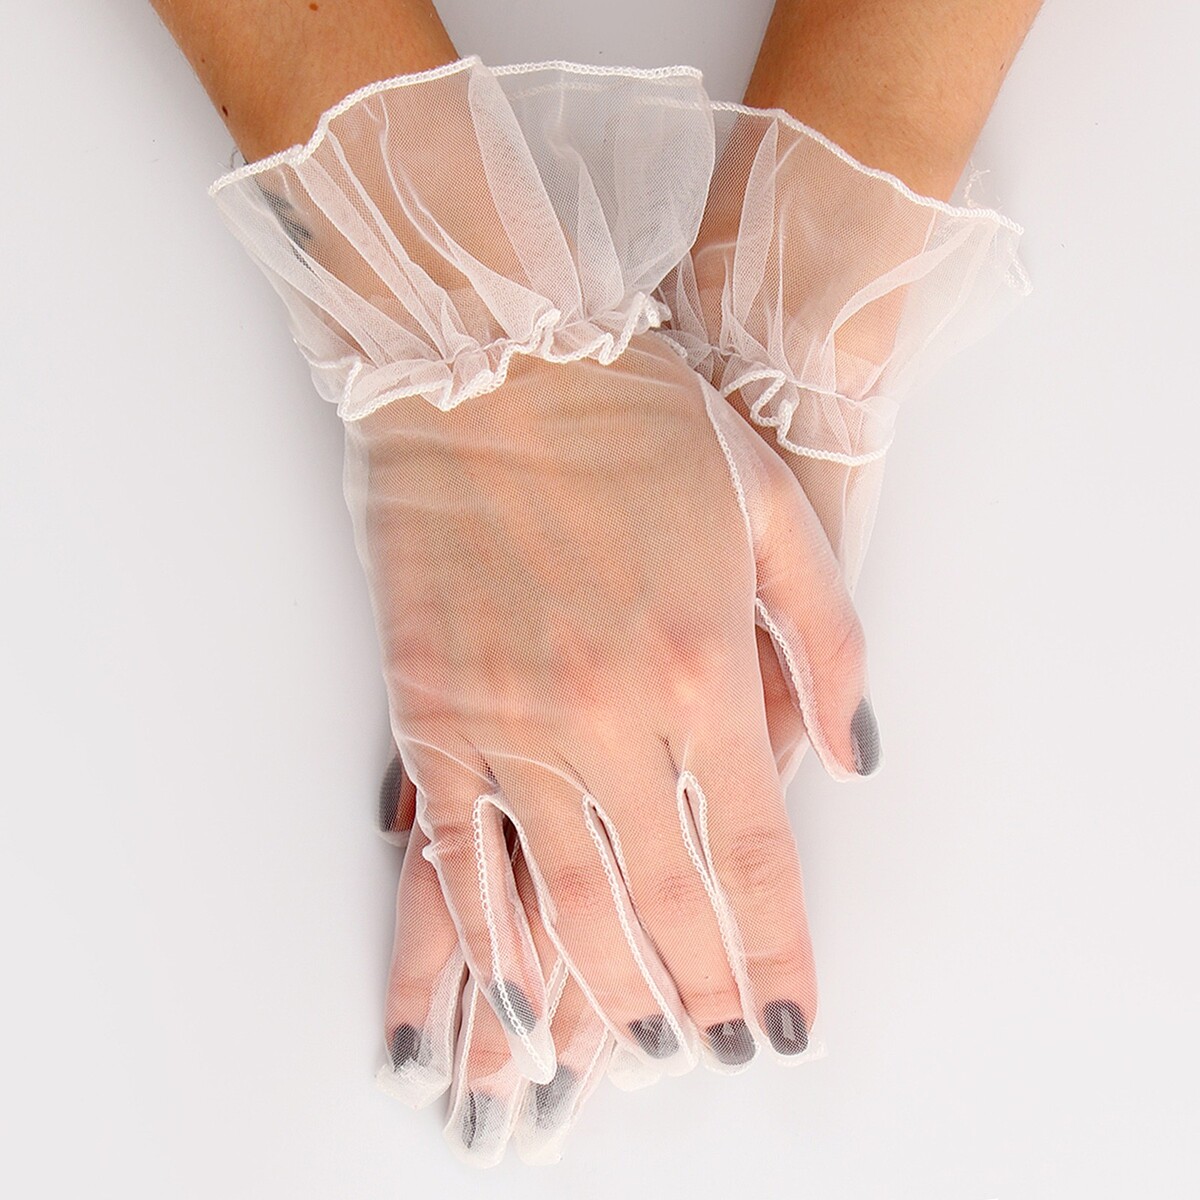 Карнавальный аксессуар - перчатки прозрачные с юбочкой, цвет белый карнавальный аксессуар перчатки прозрачные с юбочкой красный